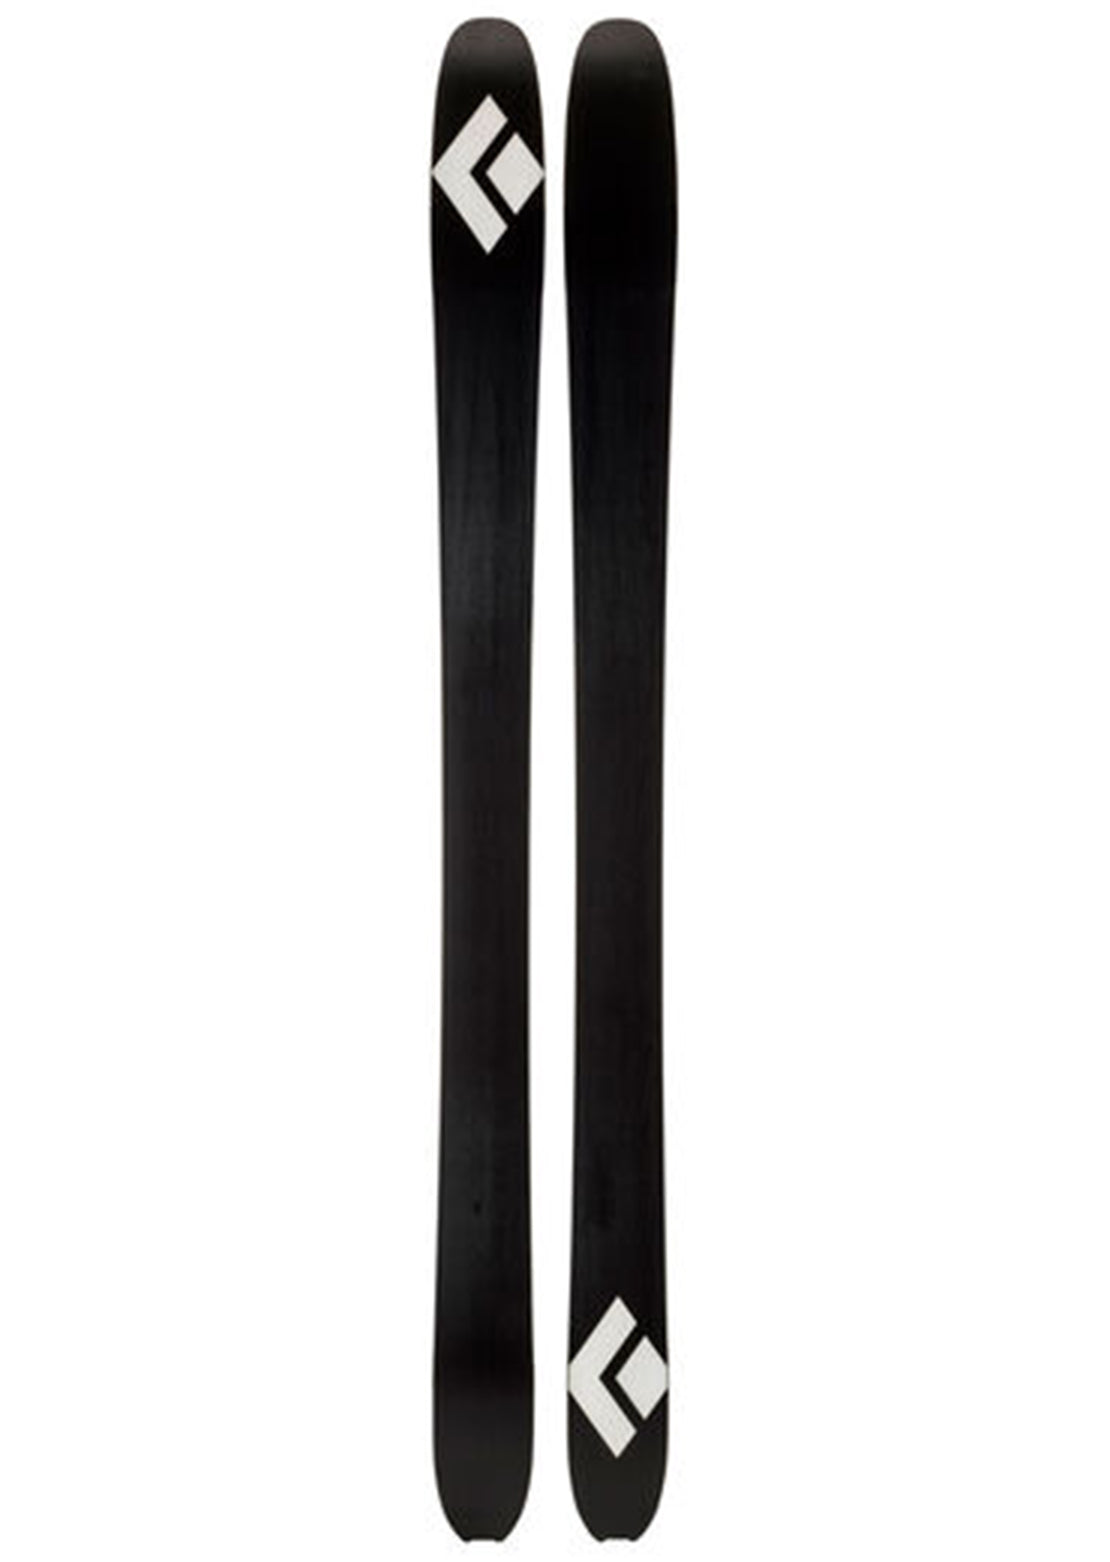 Black Diamond Boundary Pro 107 Skis - 168 cm Multi